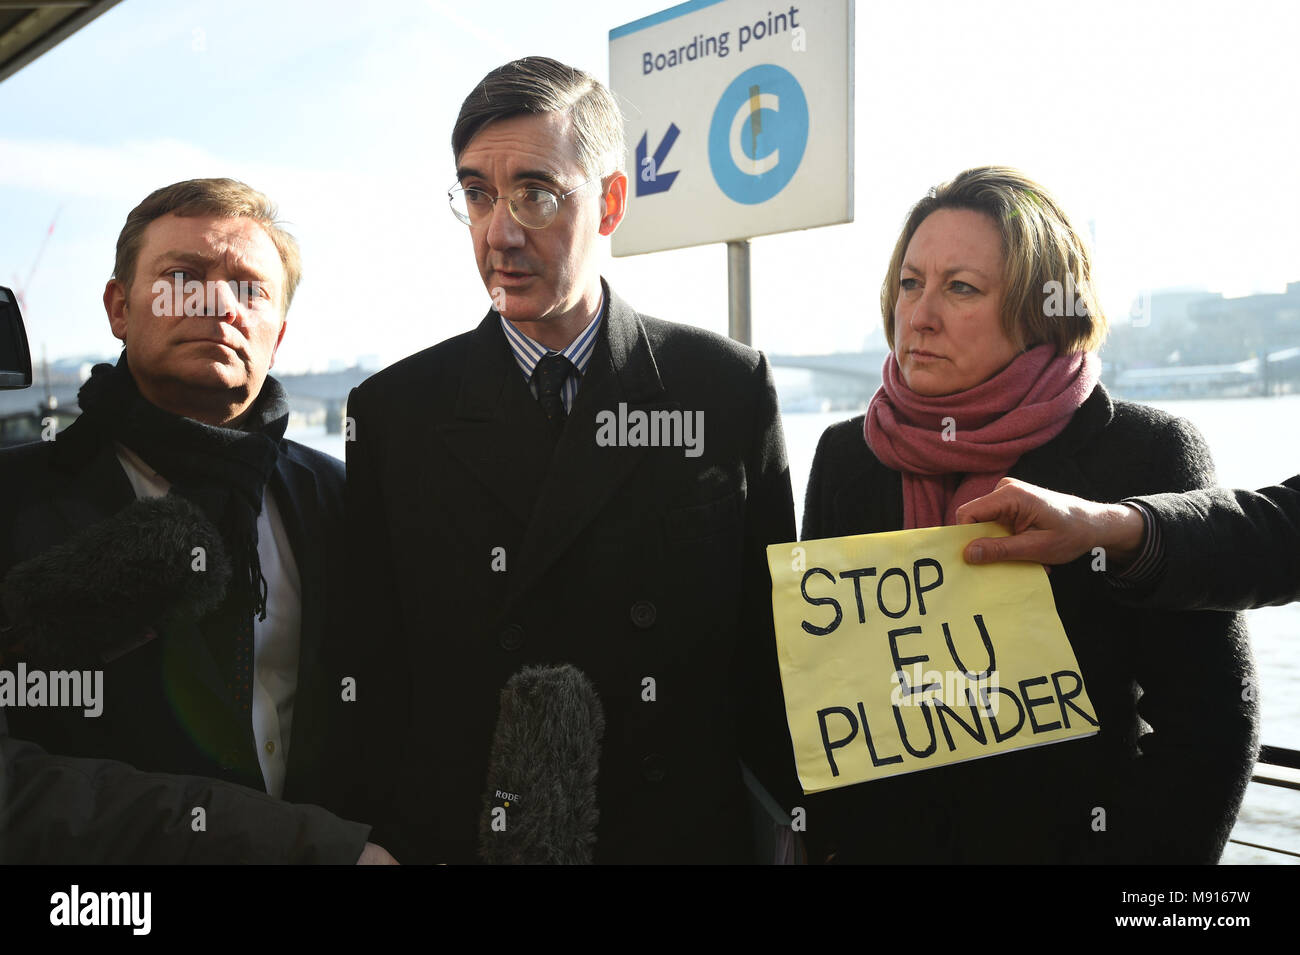 Les députés conservateurs Craig Mackinlay et Anne-Marie-Trevelyan stand avec Jacob Rees-Mogg (centre) comme ils parlent lors d'une conférence de presse sur l'Embankment Pier, sur la Tamise à Londres, en prévision d'un congé pour protester contre la pêche où le poisson sera rejeté dans la Tamise. Banque D'Images